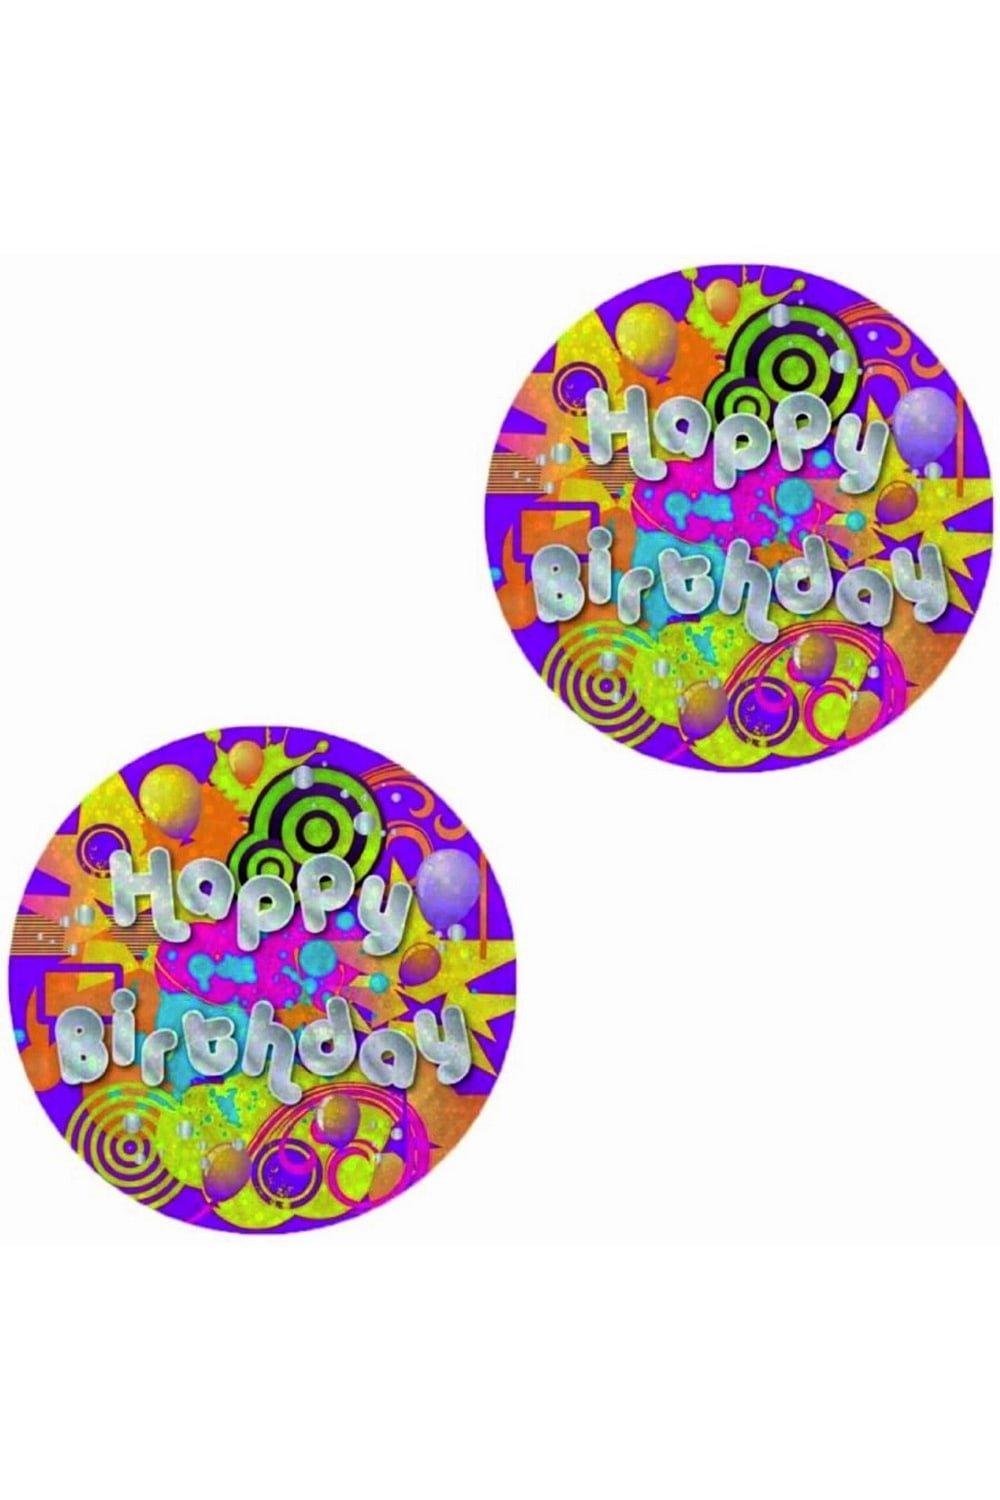 Holographic Happy Birthday Badge